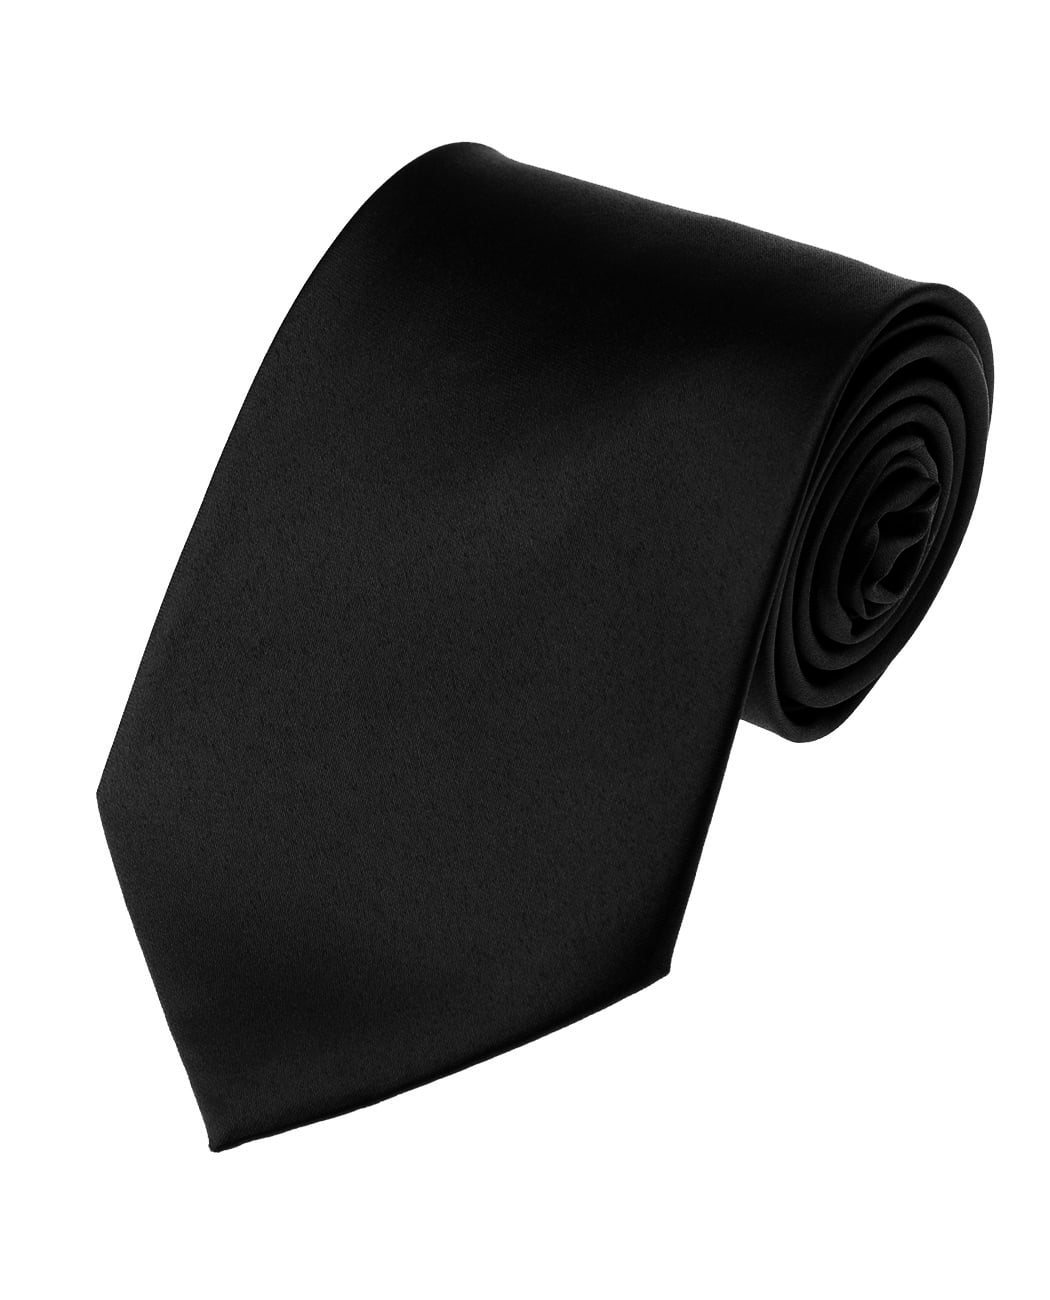 NYFASHION101 Men's Solid Color Polyester Tie PS58-Black - Walmart.com